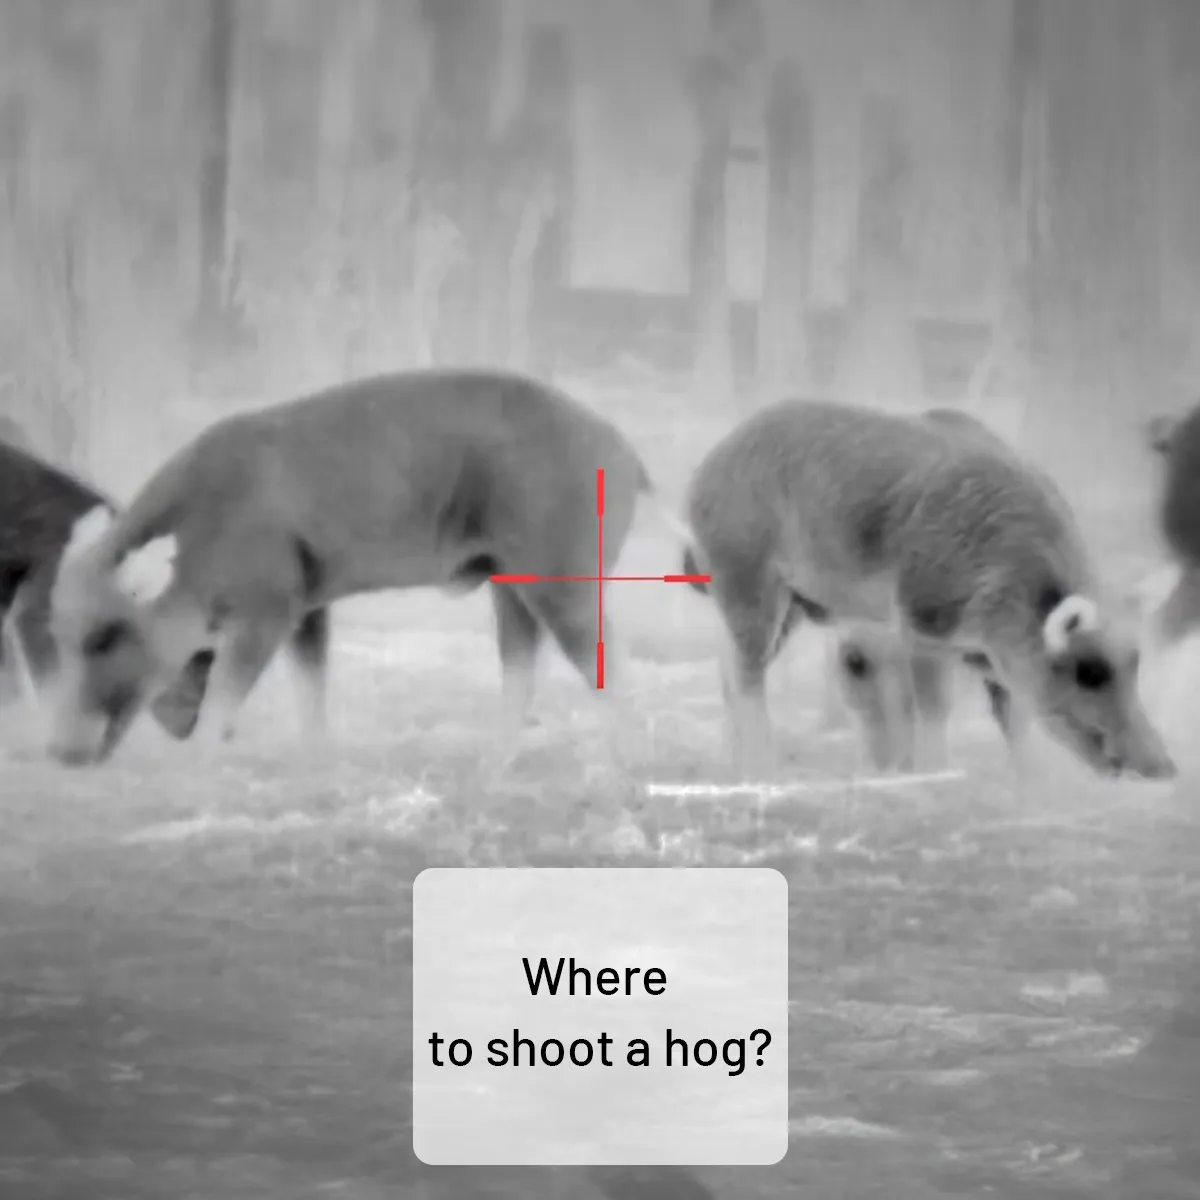 Where to shoot a hog